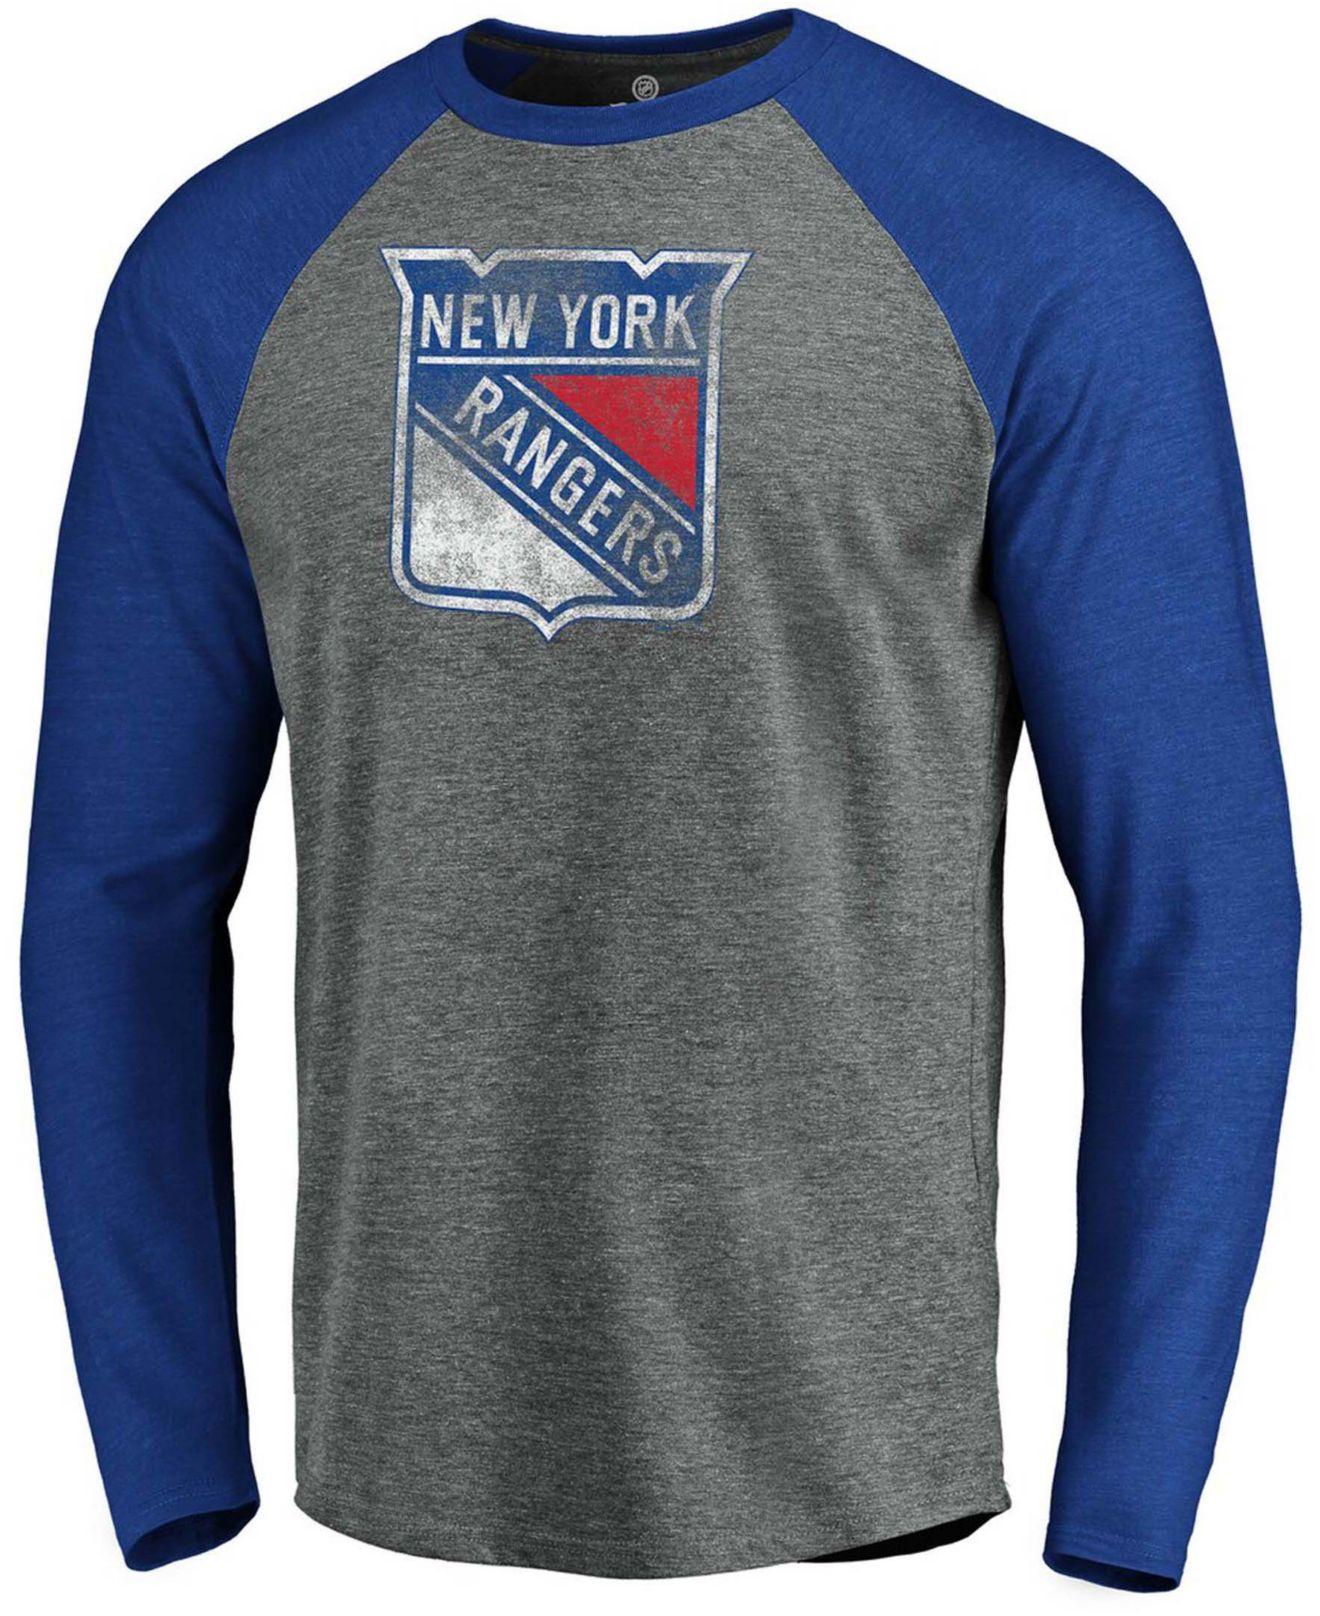 New York Rangers logo Team Shirt jersey shirt